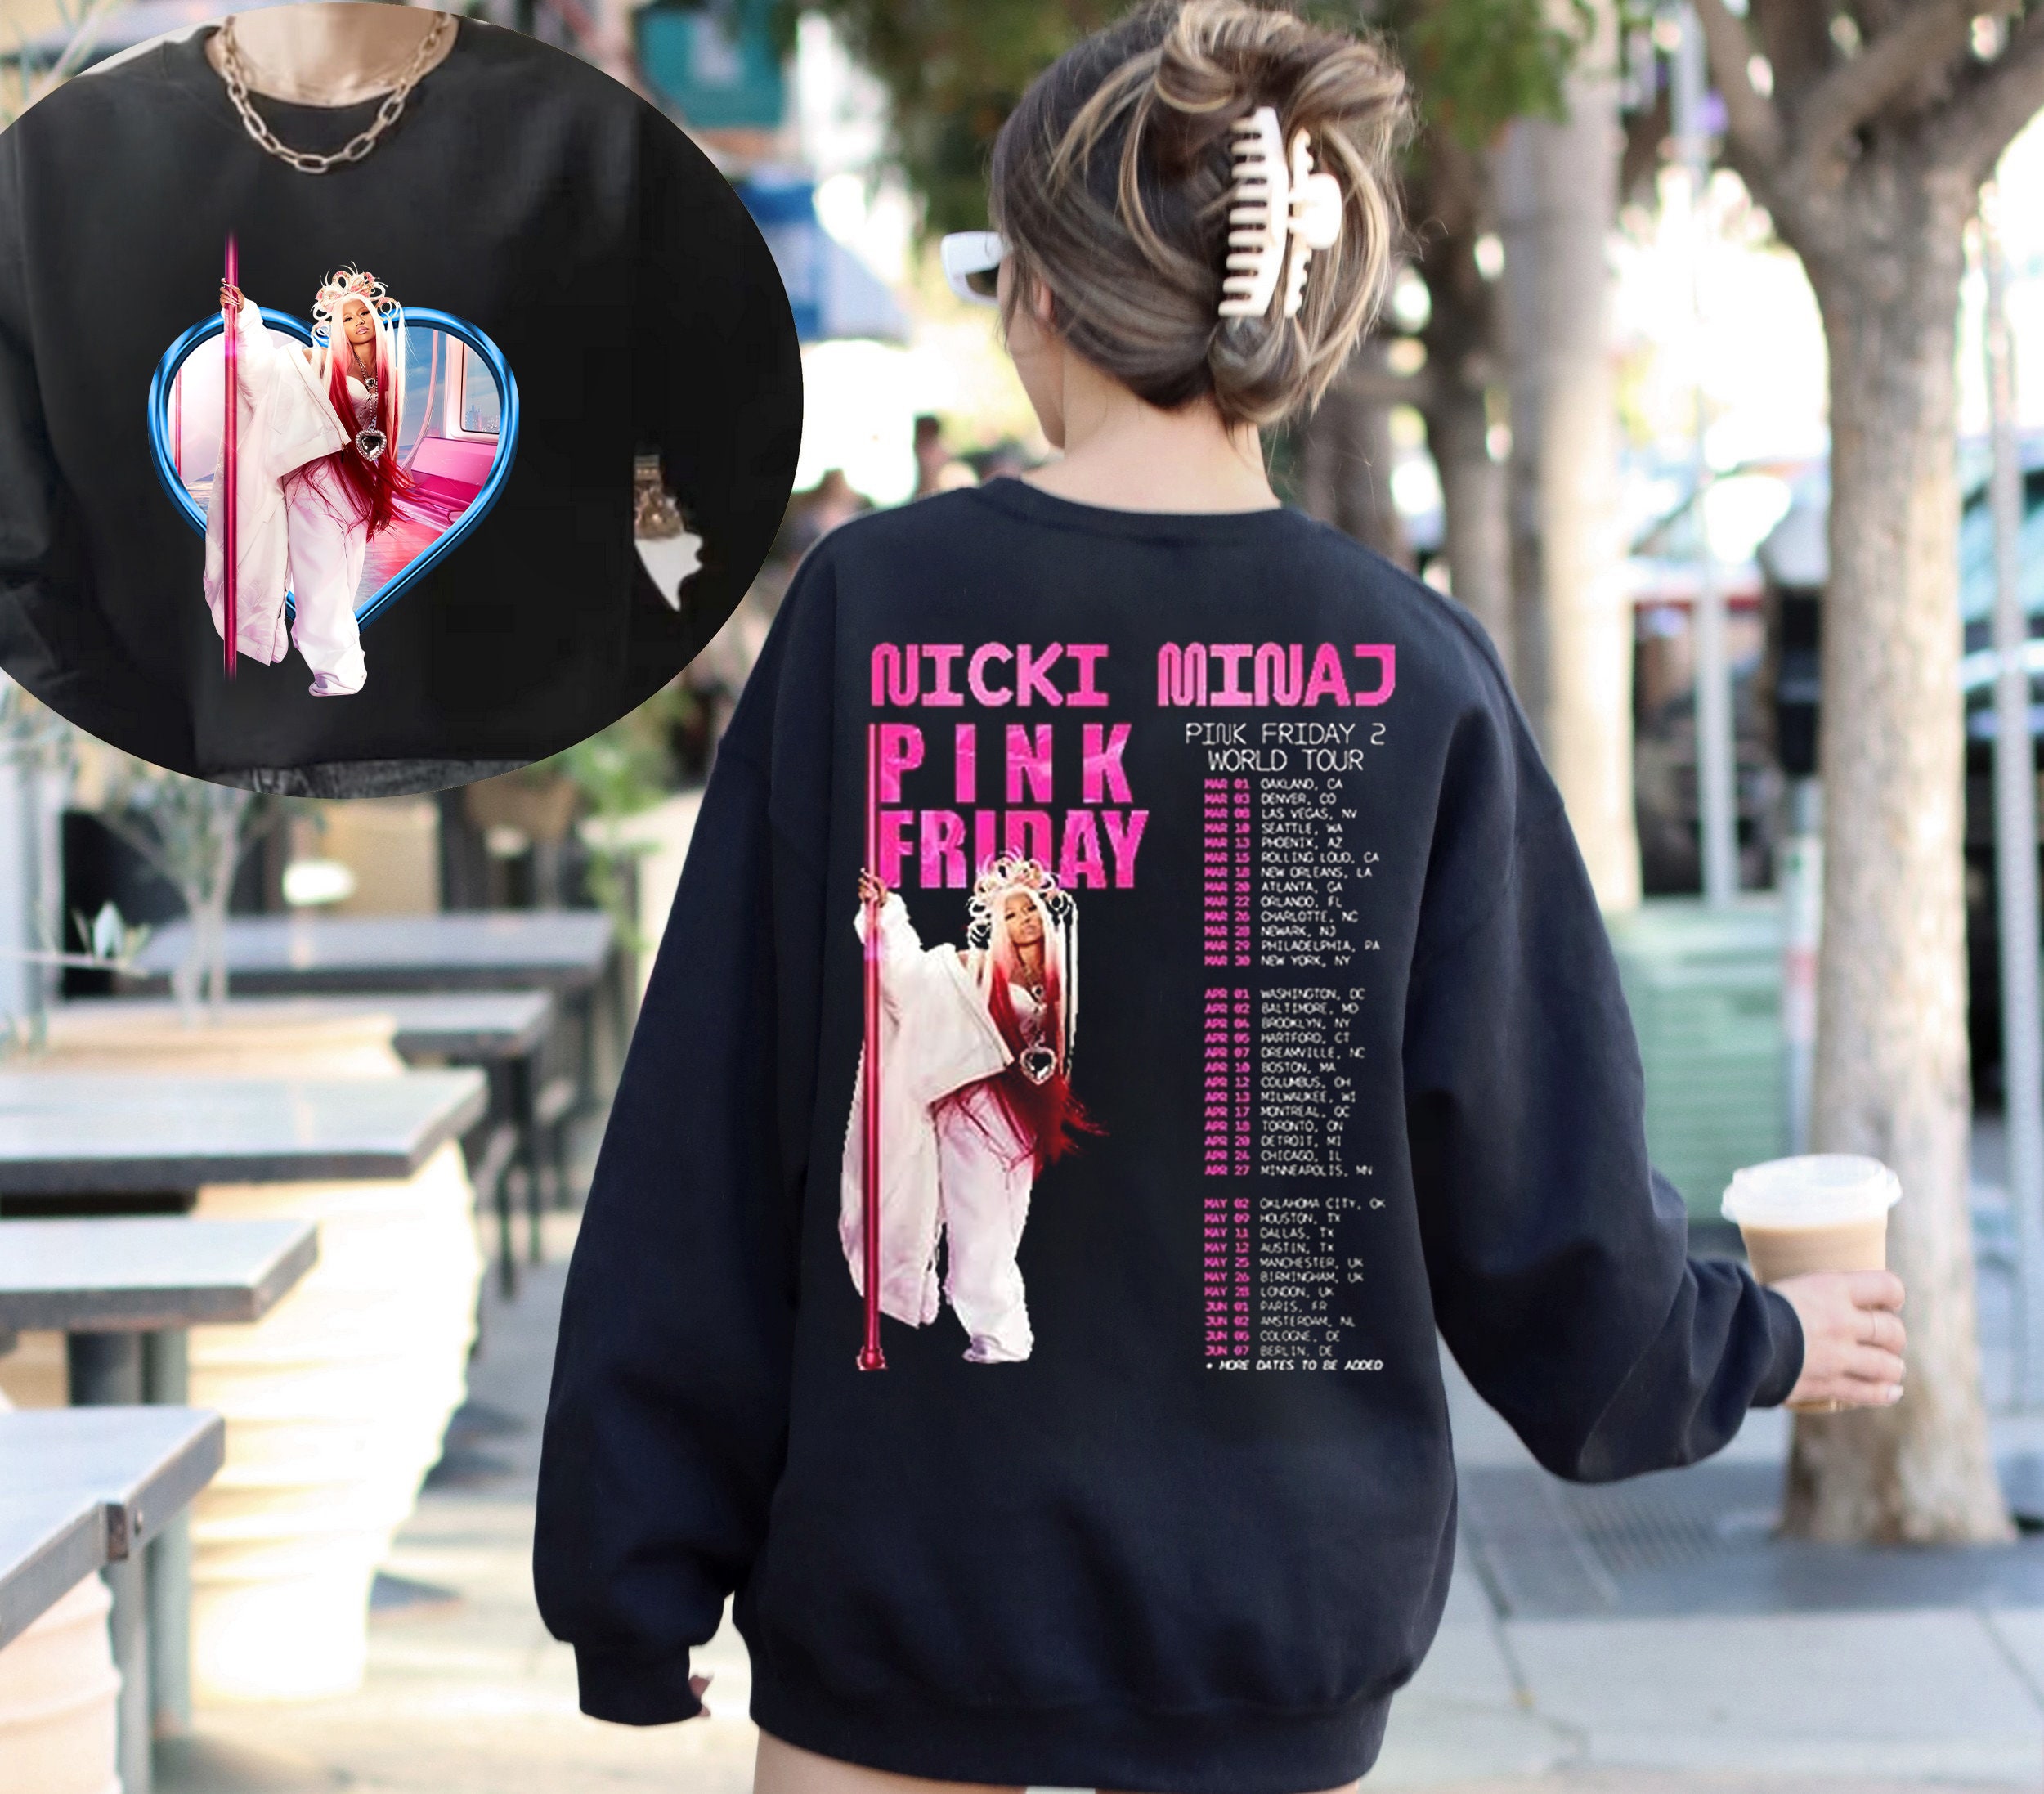 Limited Nicki Minaj Pink Friday 2 Tour Vintage Shirt, Nicki Minaj World Tour Shirt, Nicki Minaj, Pink Friday Shirt, Nicki Minaj Shirt